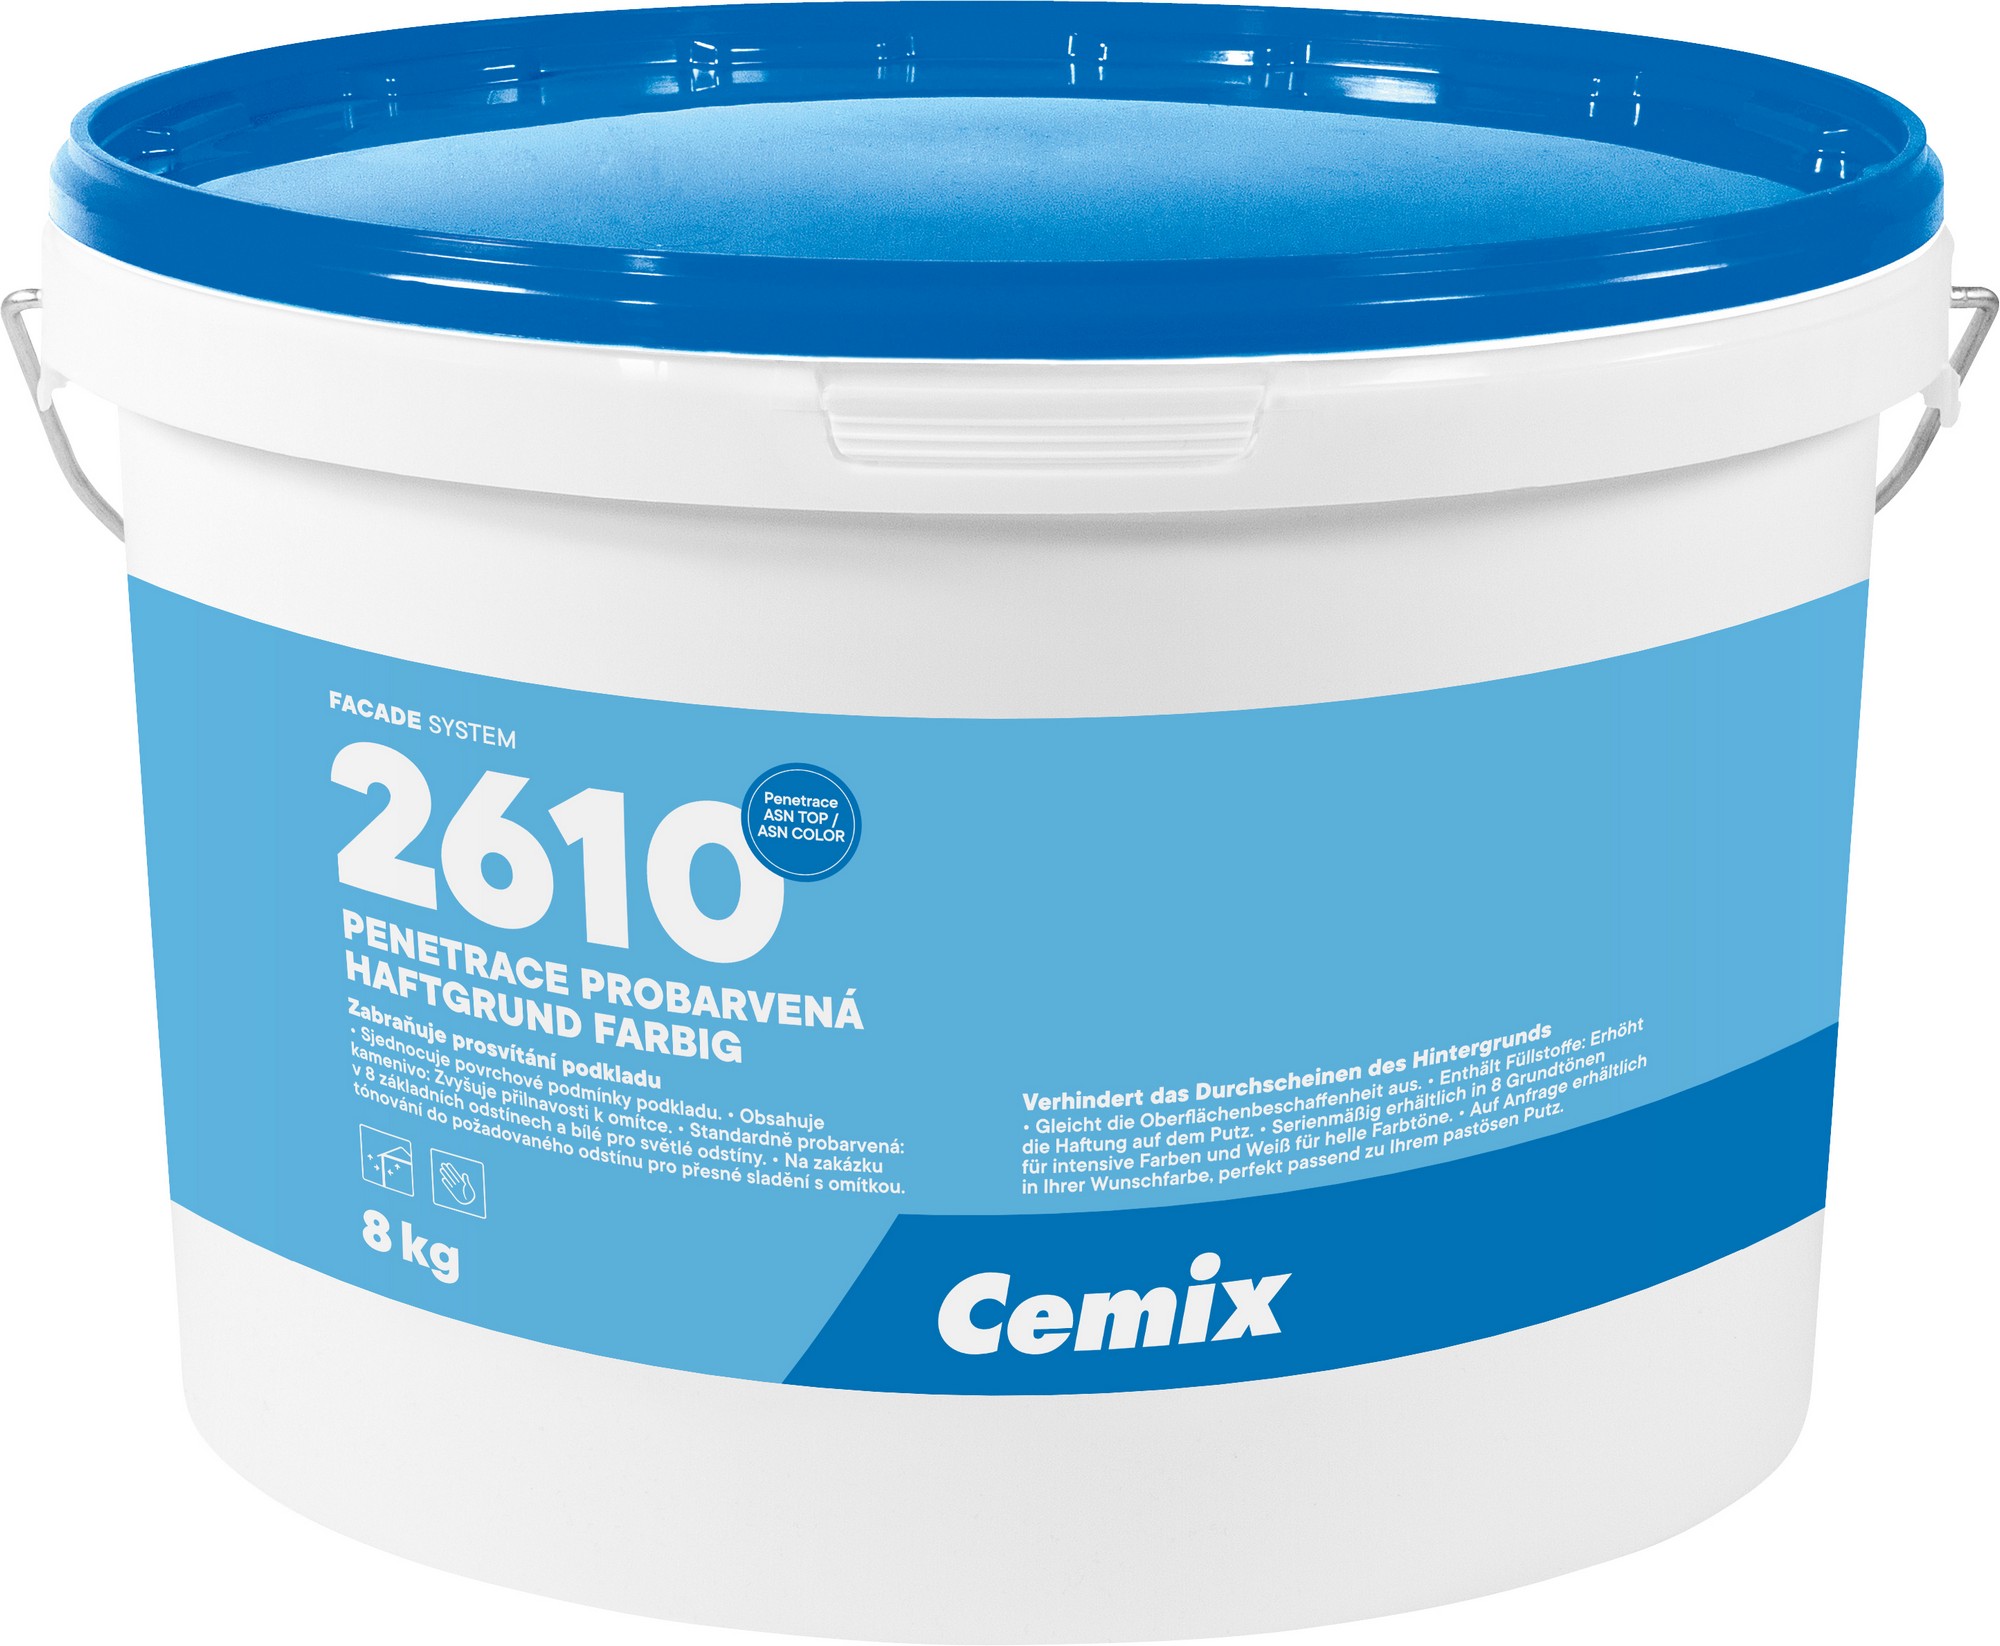 Penetrace probarvená Cemix 2610 okrová 8 kg